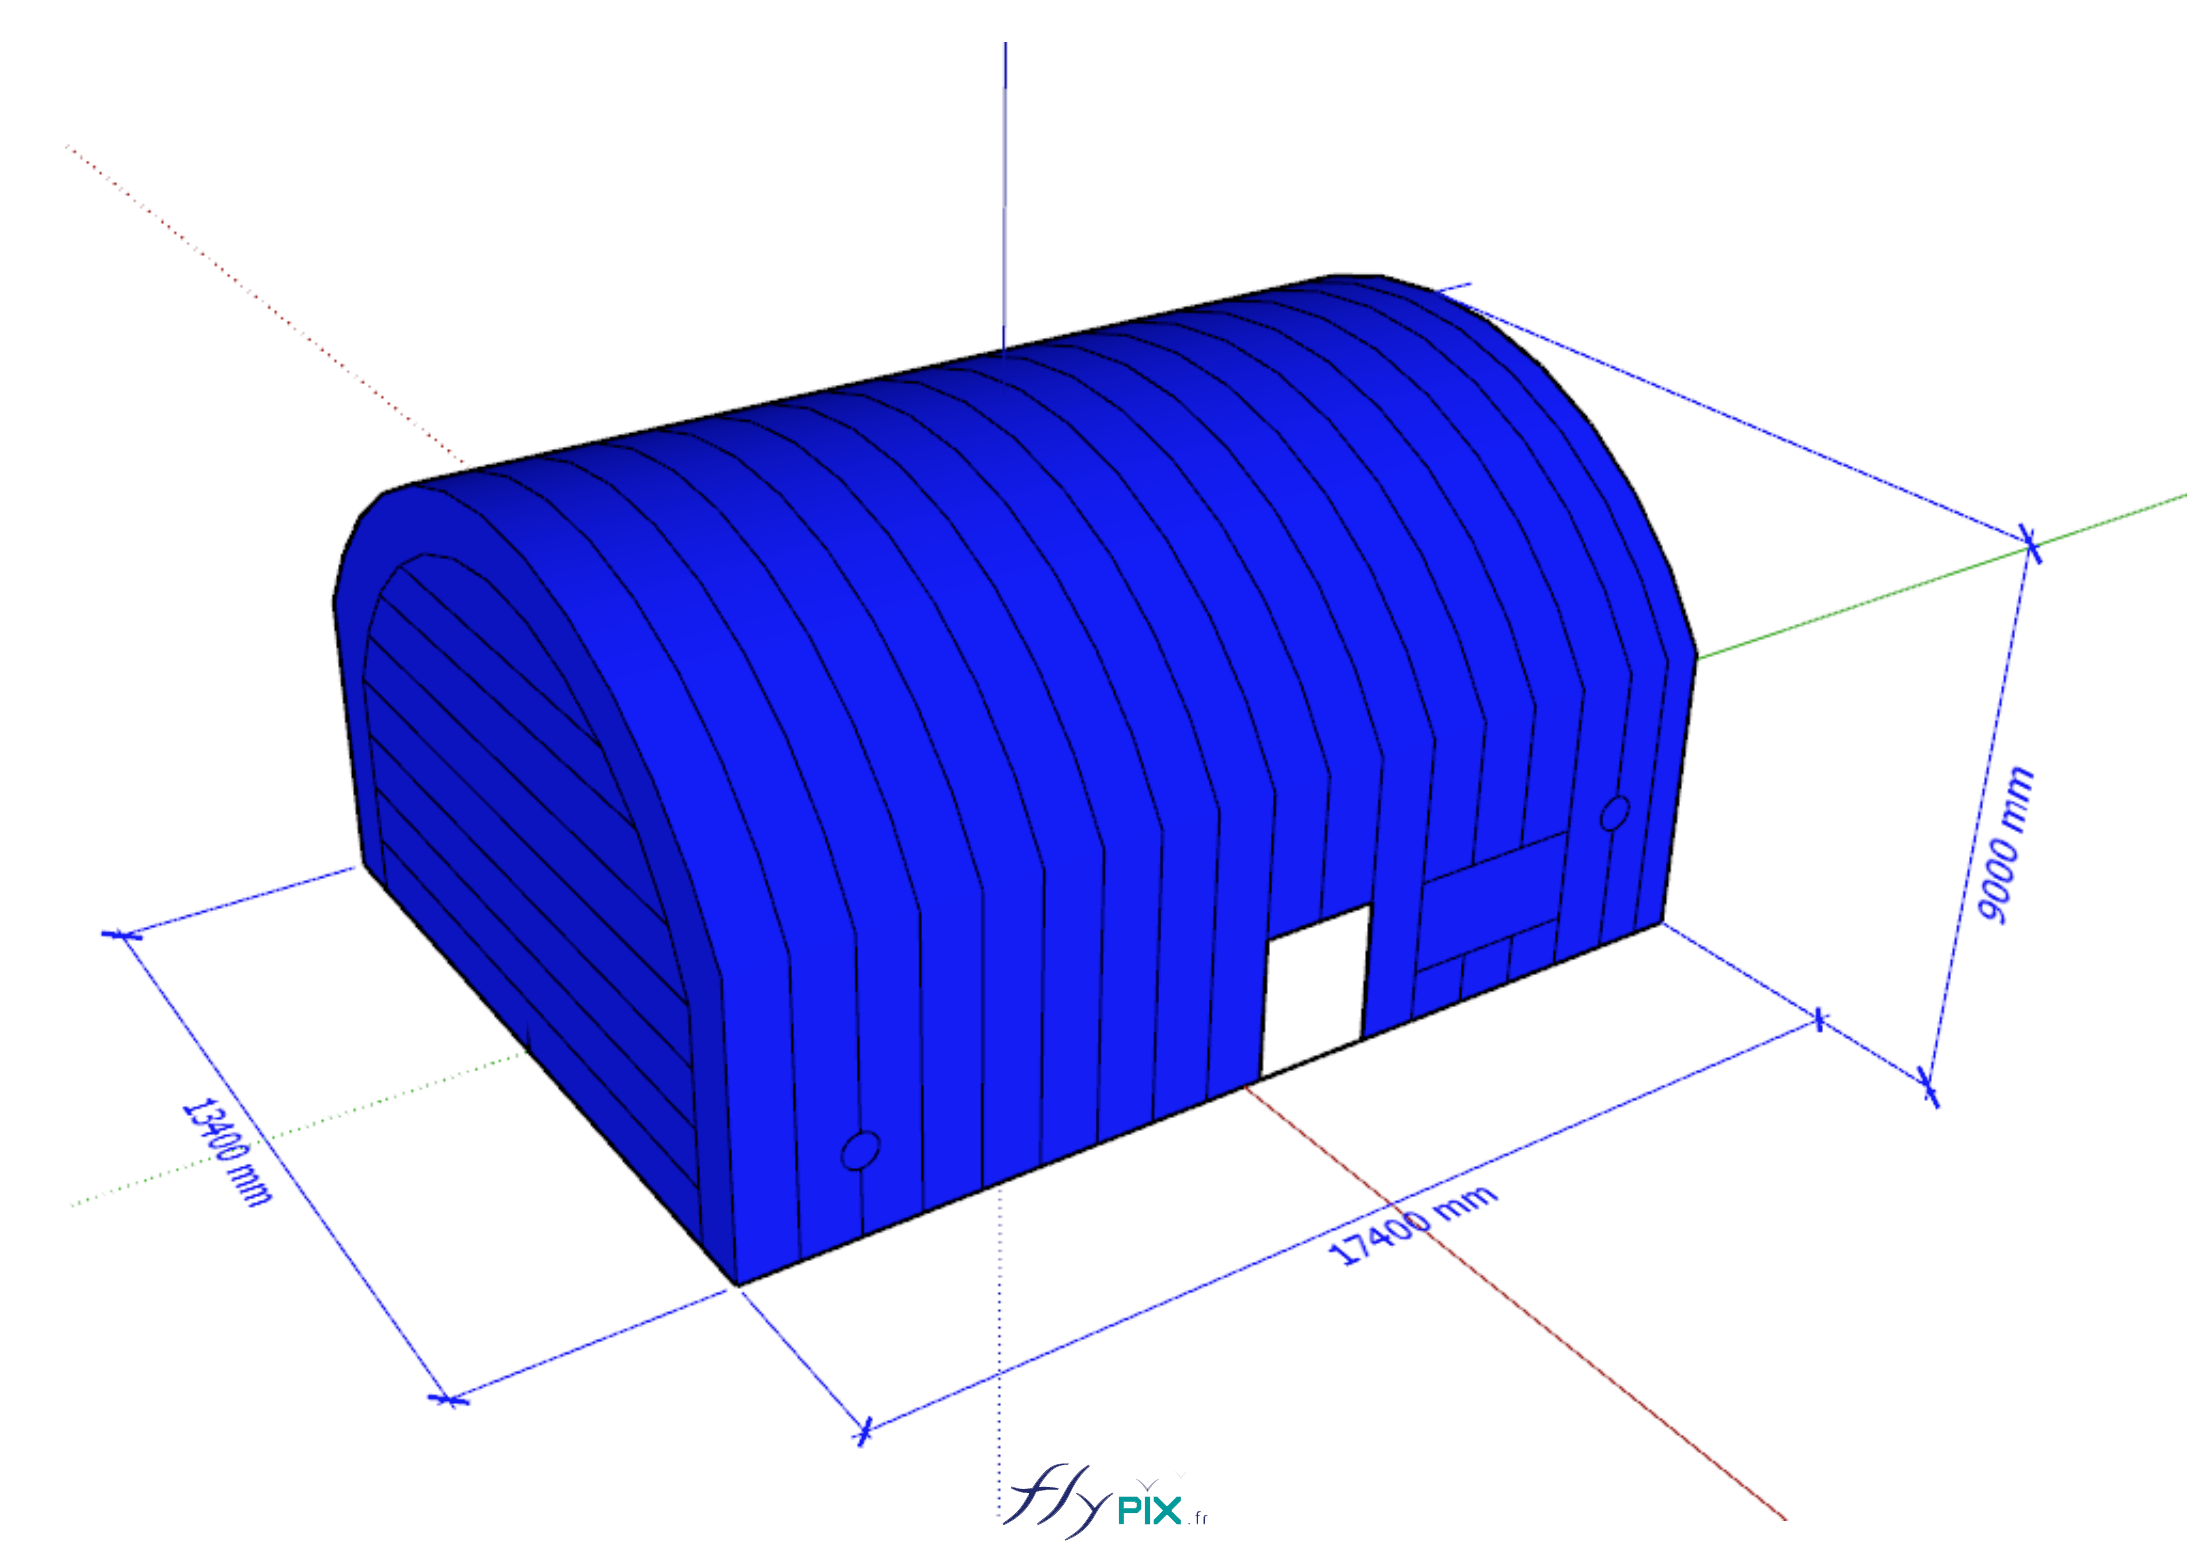 Modelisation 3D tente abri hangar industriel air captif PVC 06mm double peau capitonnee ALTRAD 3